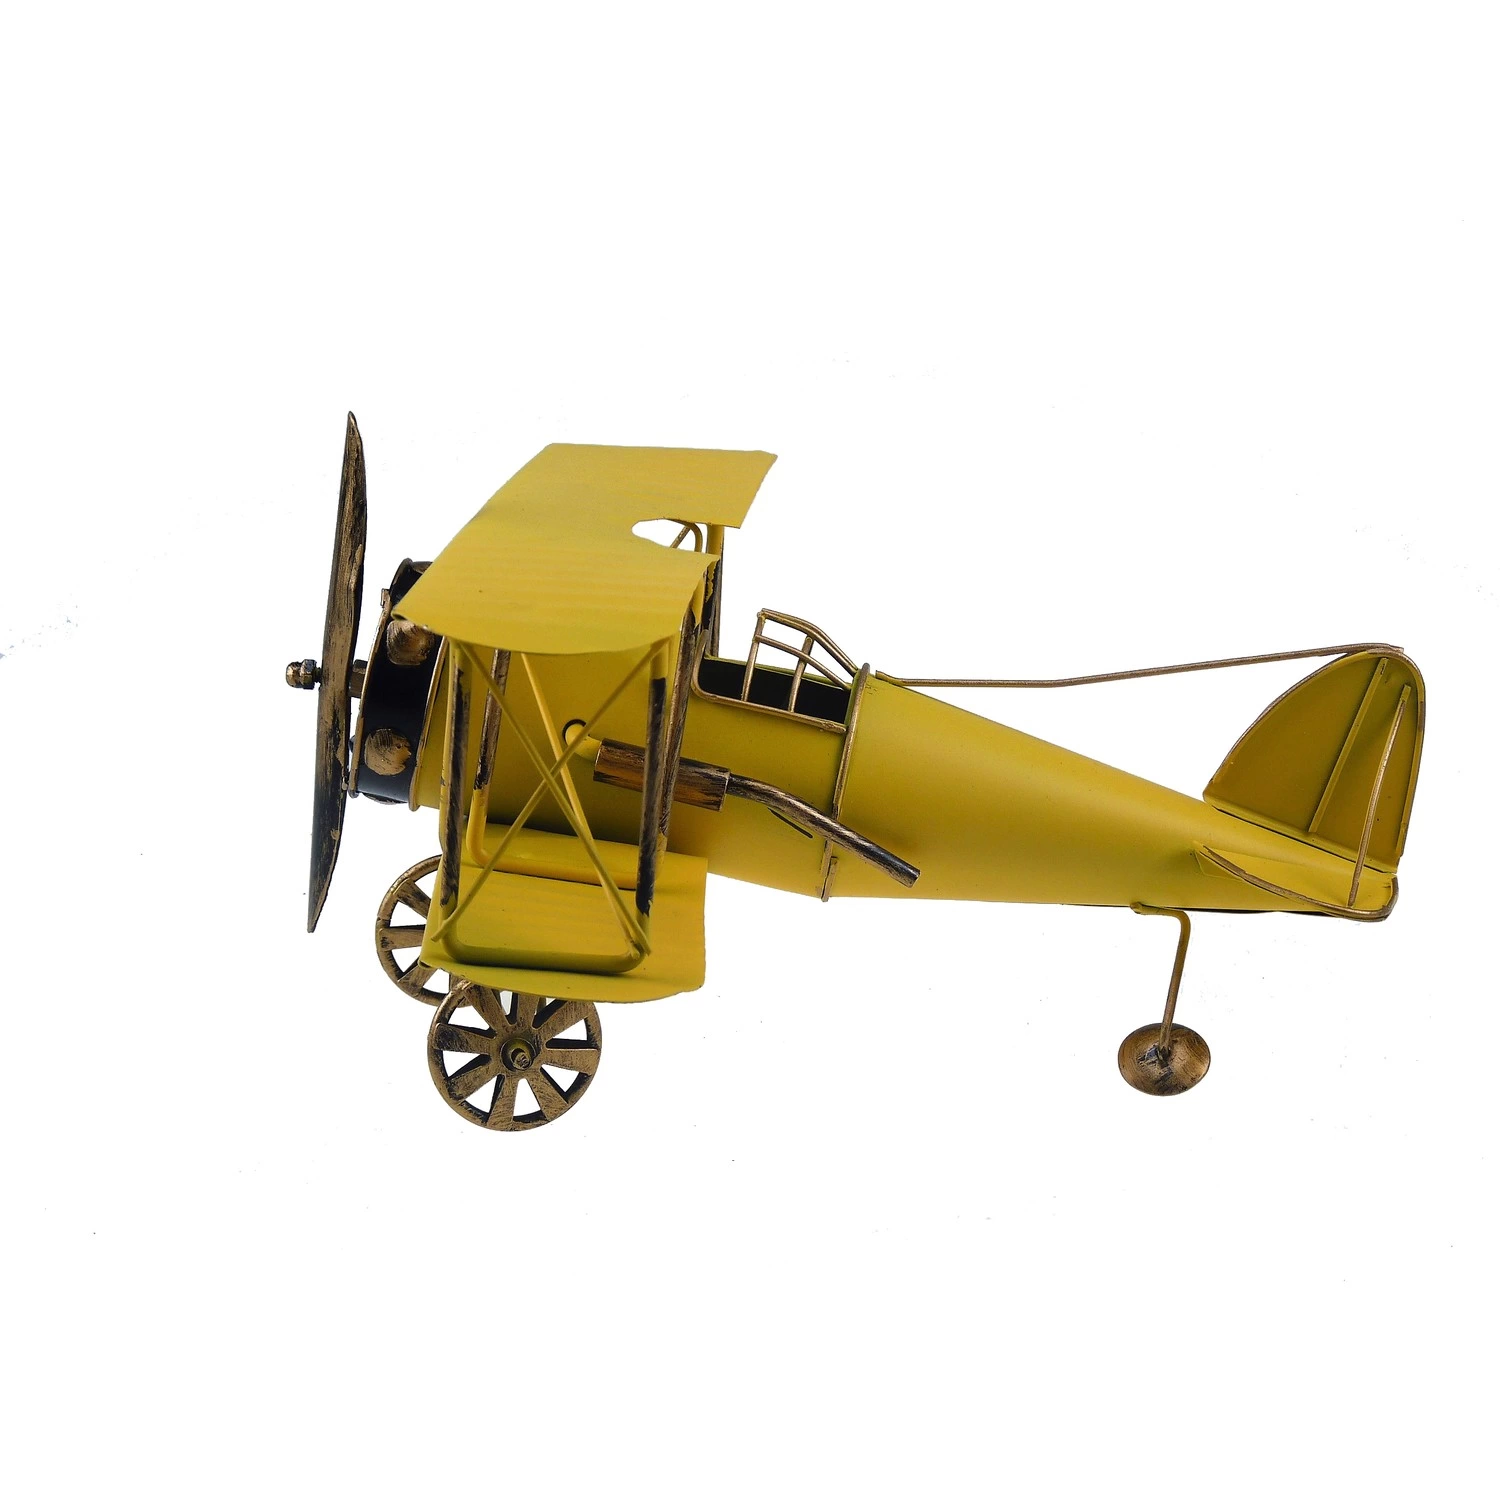 Çift Kanatlı Dekoratif Metal Keşif Uçak Büyük Boy 60 Cm (sarı ) ( Lisinya )